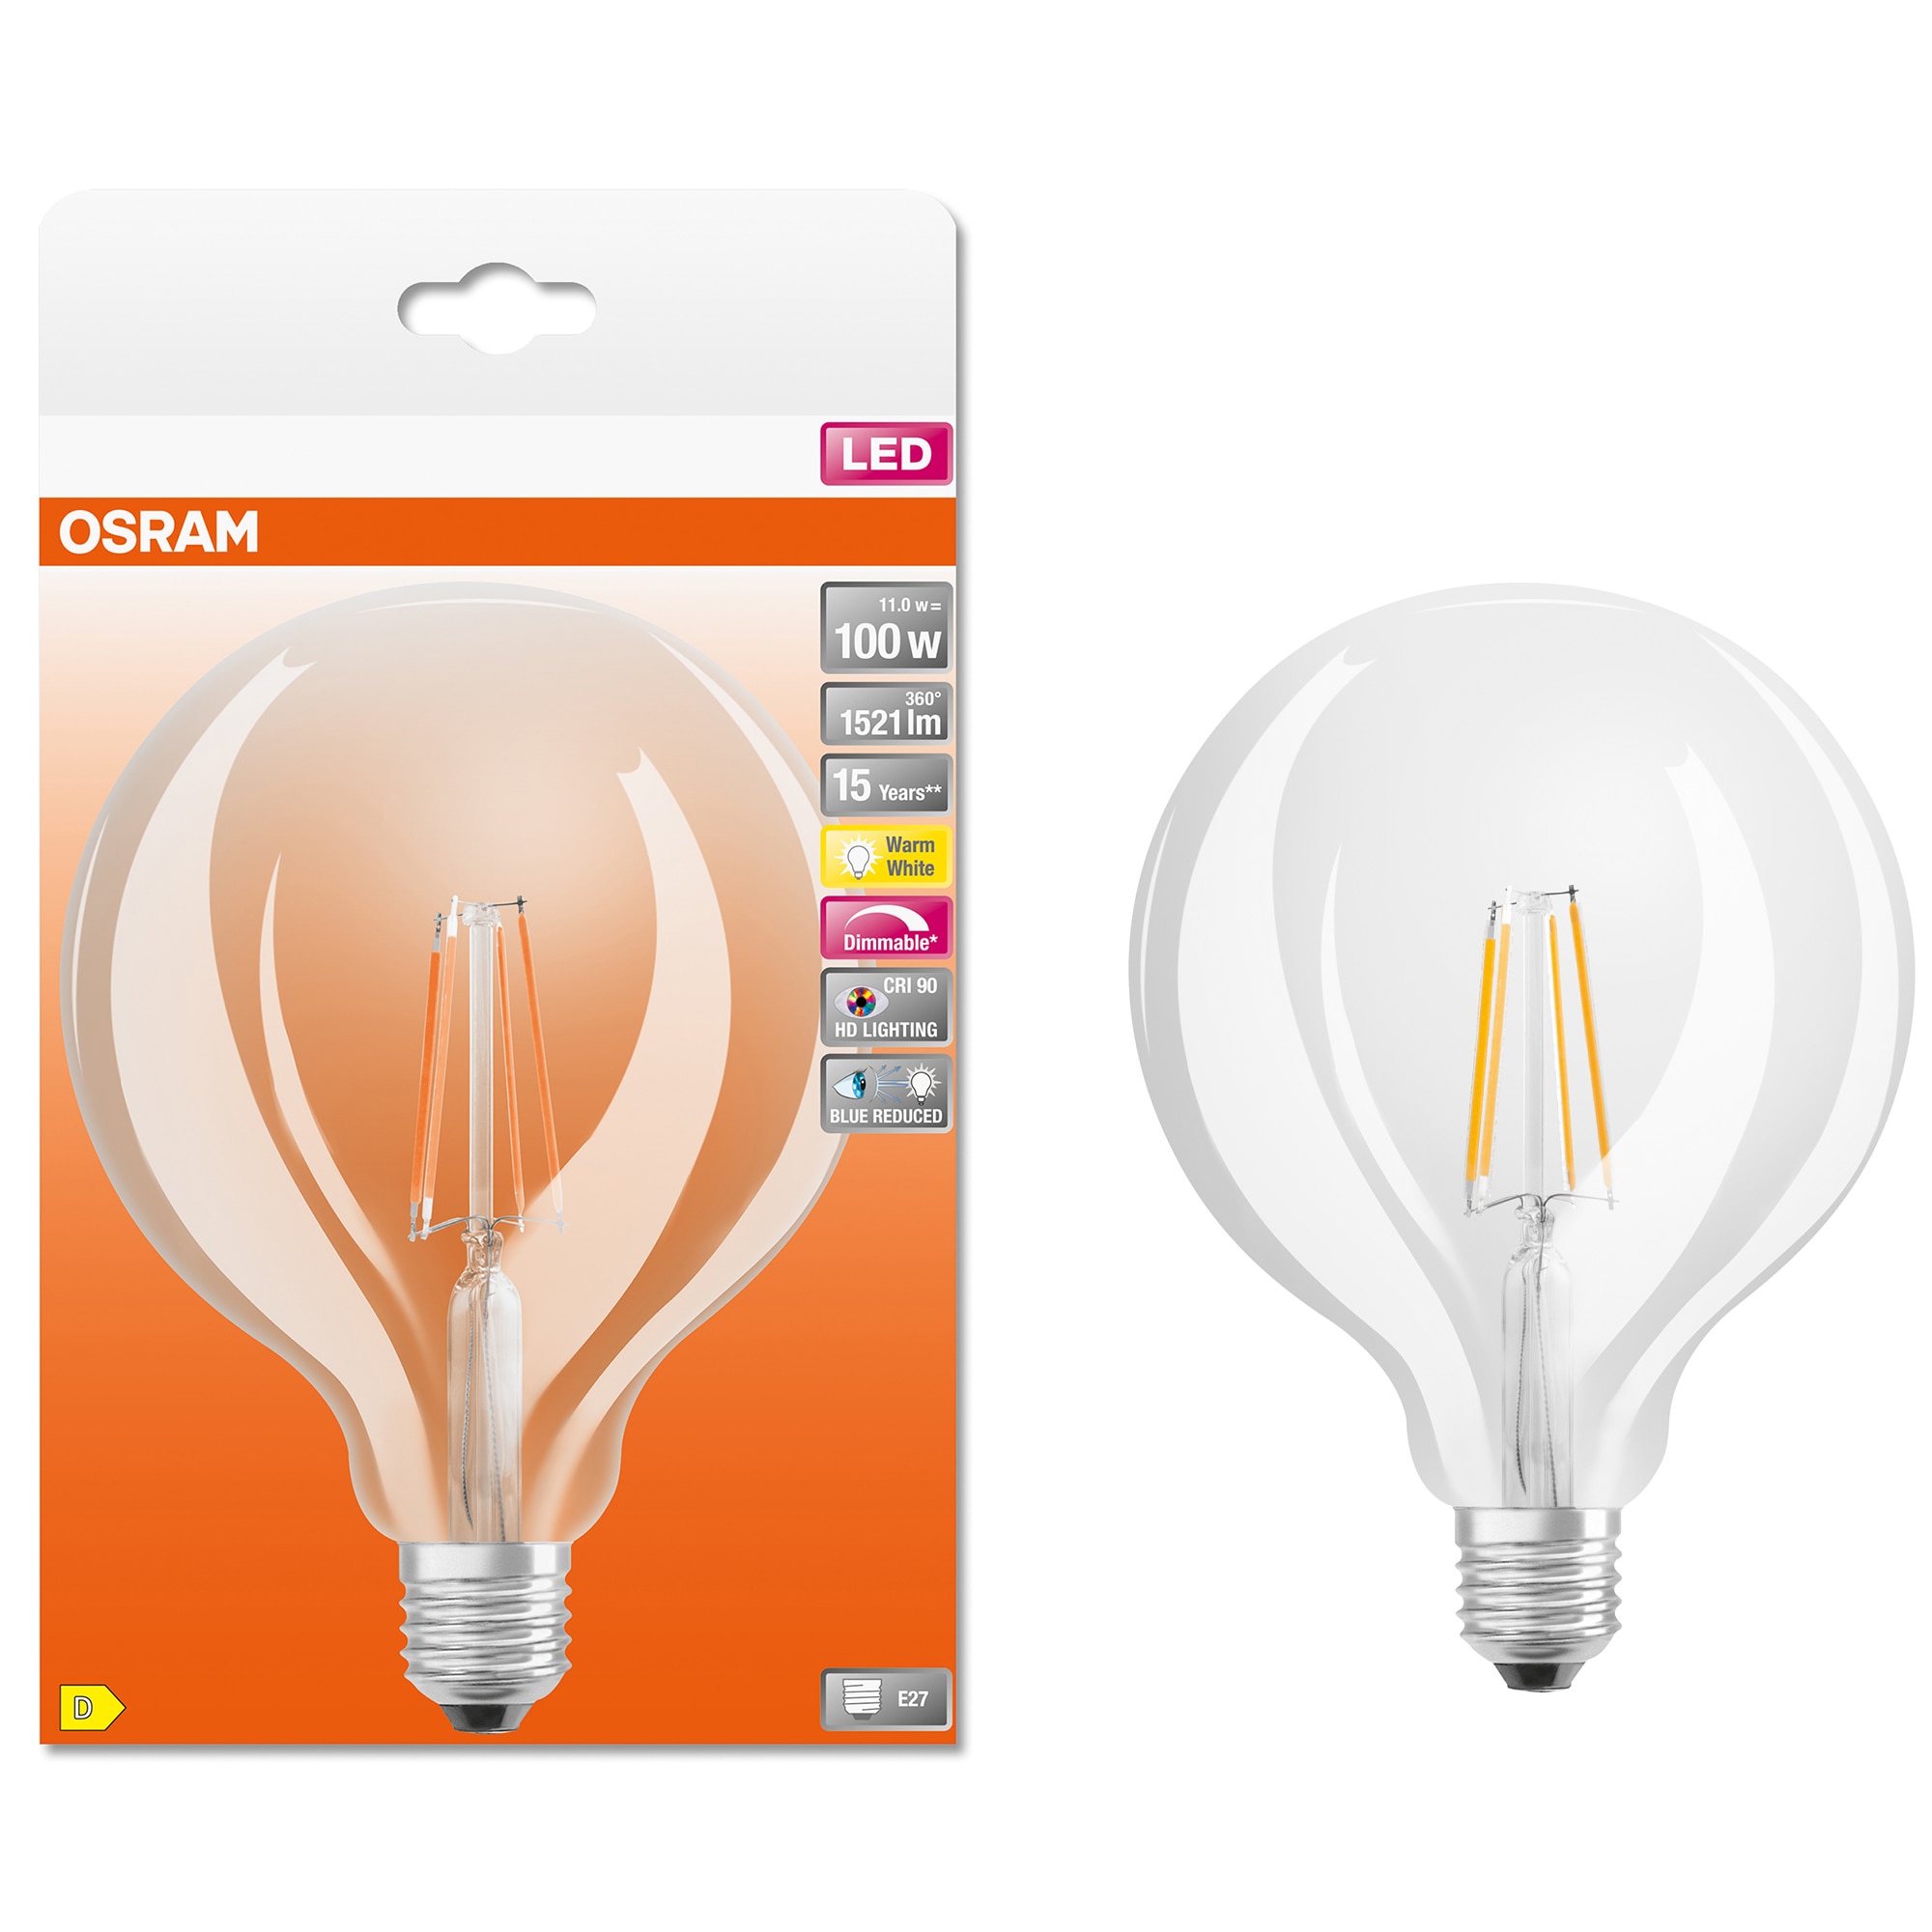 Fotografie Bec LED dimabil Osram SST Plus Globe Filament G125, CRI90, 11W (100W), 1521 lm, lumina calda (2700K), clasa energetica D